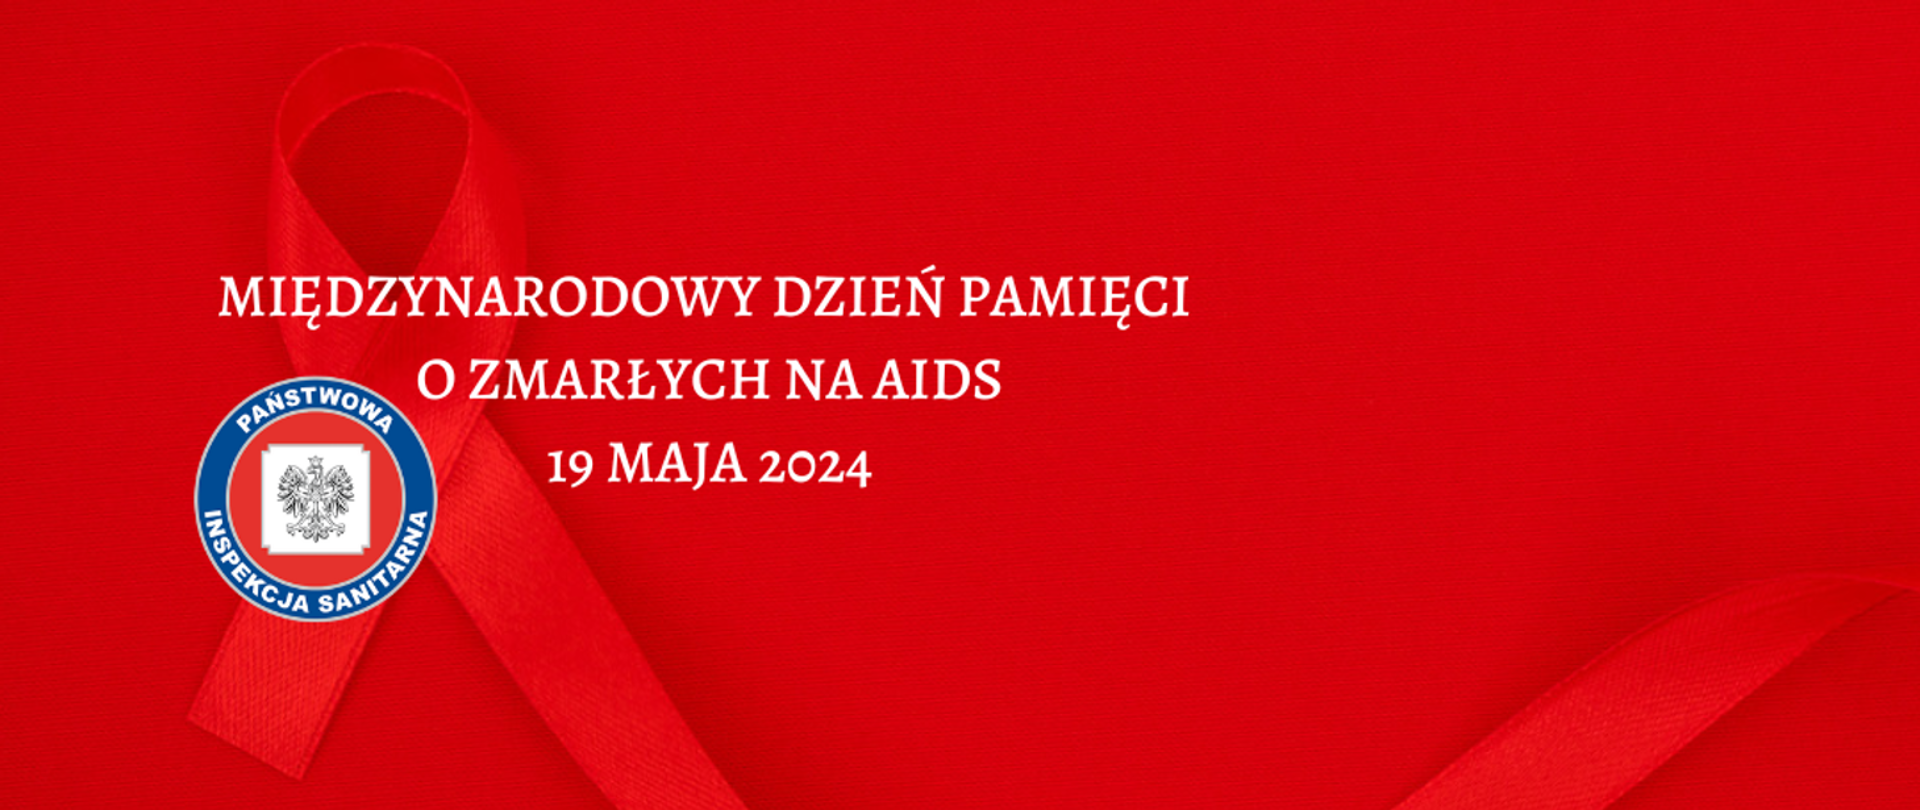 Międzynarodowy Dzień Pamięci o Zmarłych na AIDS 19 maja 2024